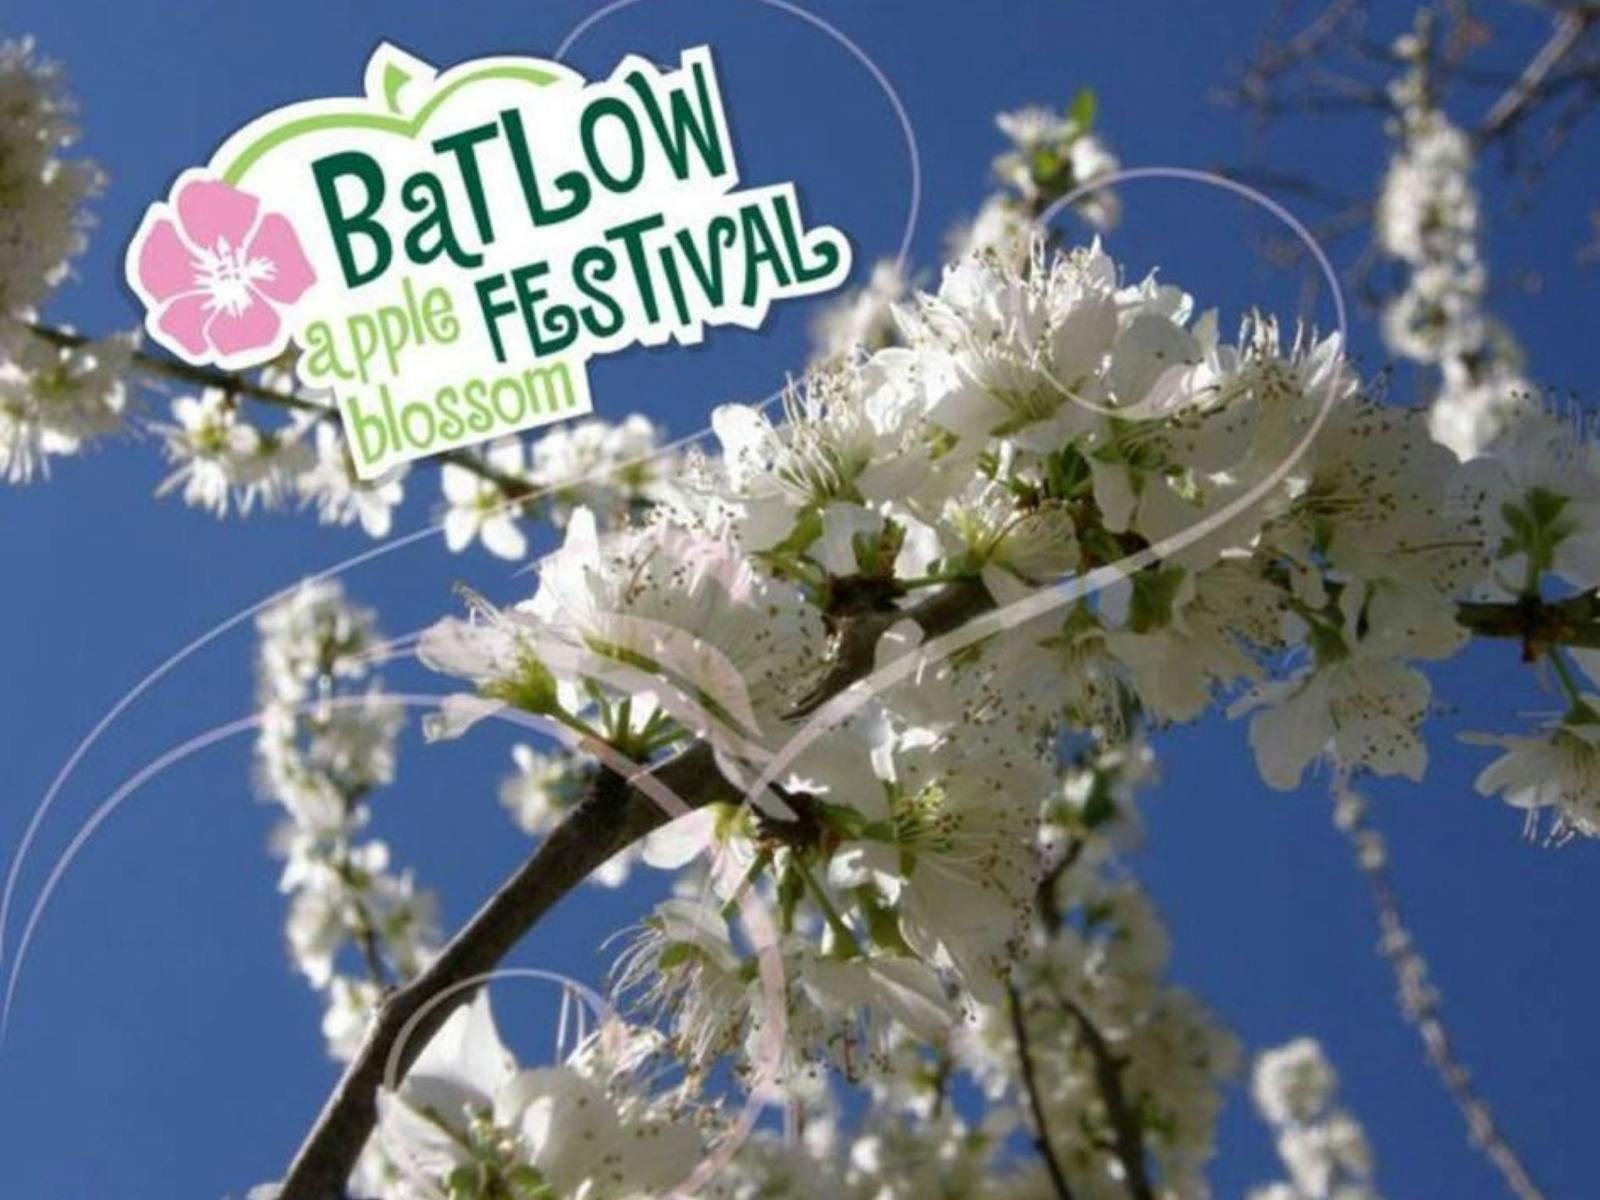 Image for Batlow Apple Blossom Festival